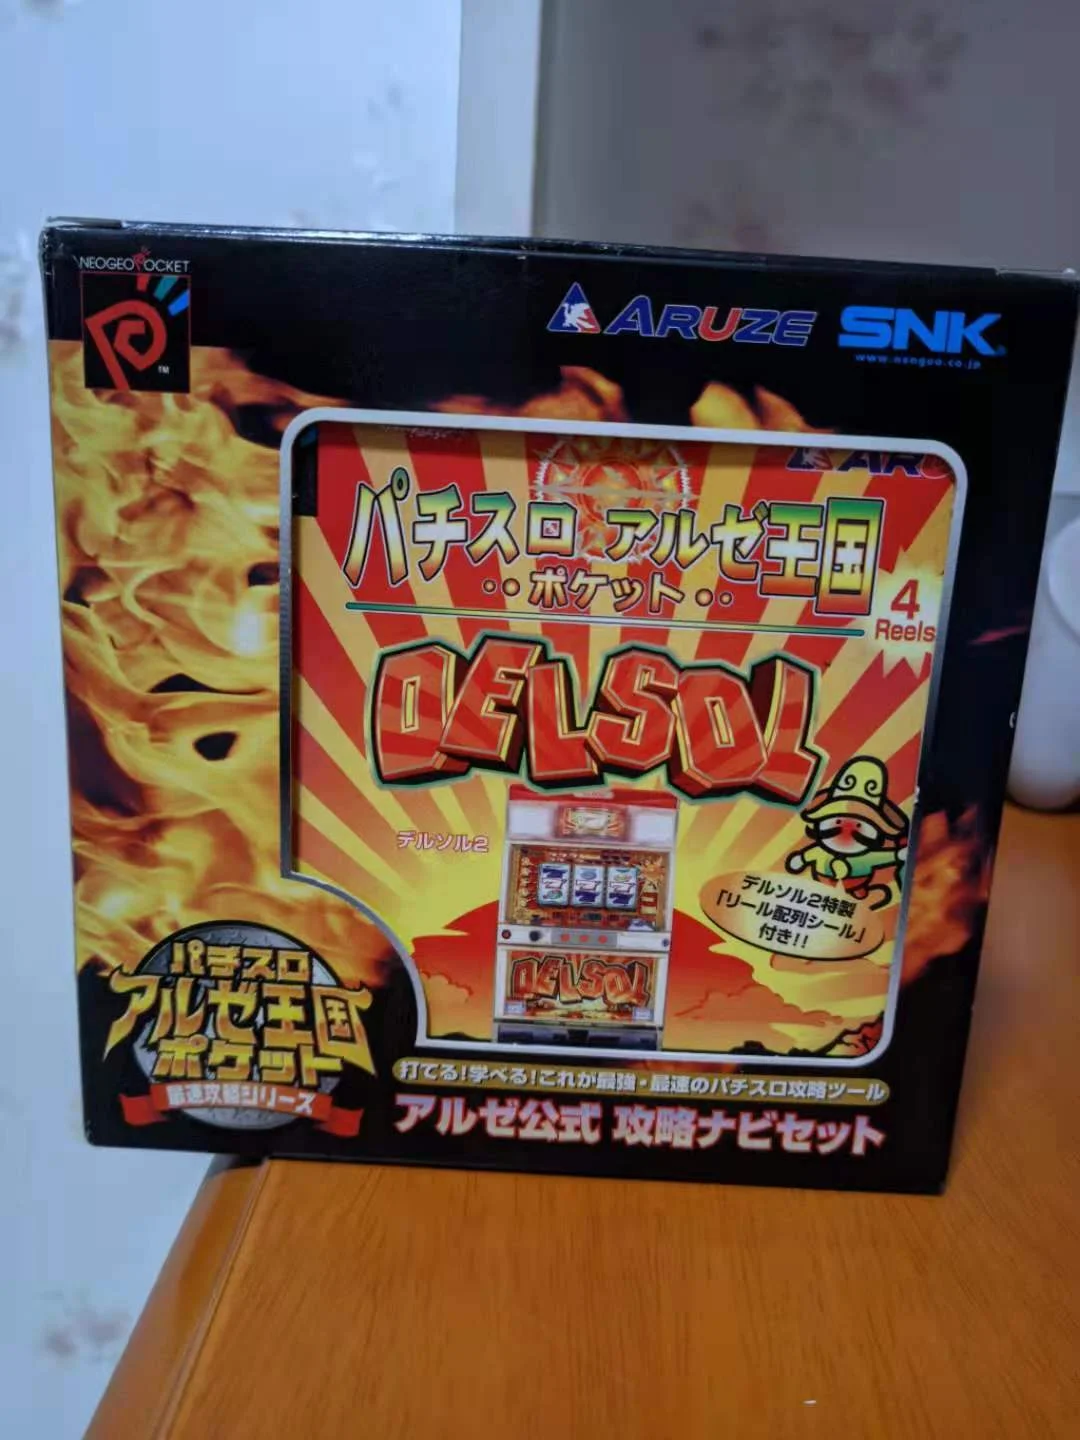  Neo Geo Pocket Color Pachi Slot Bundle